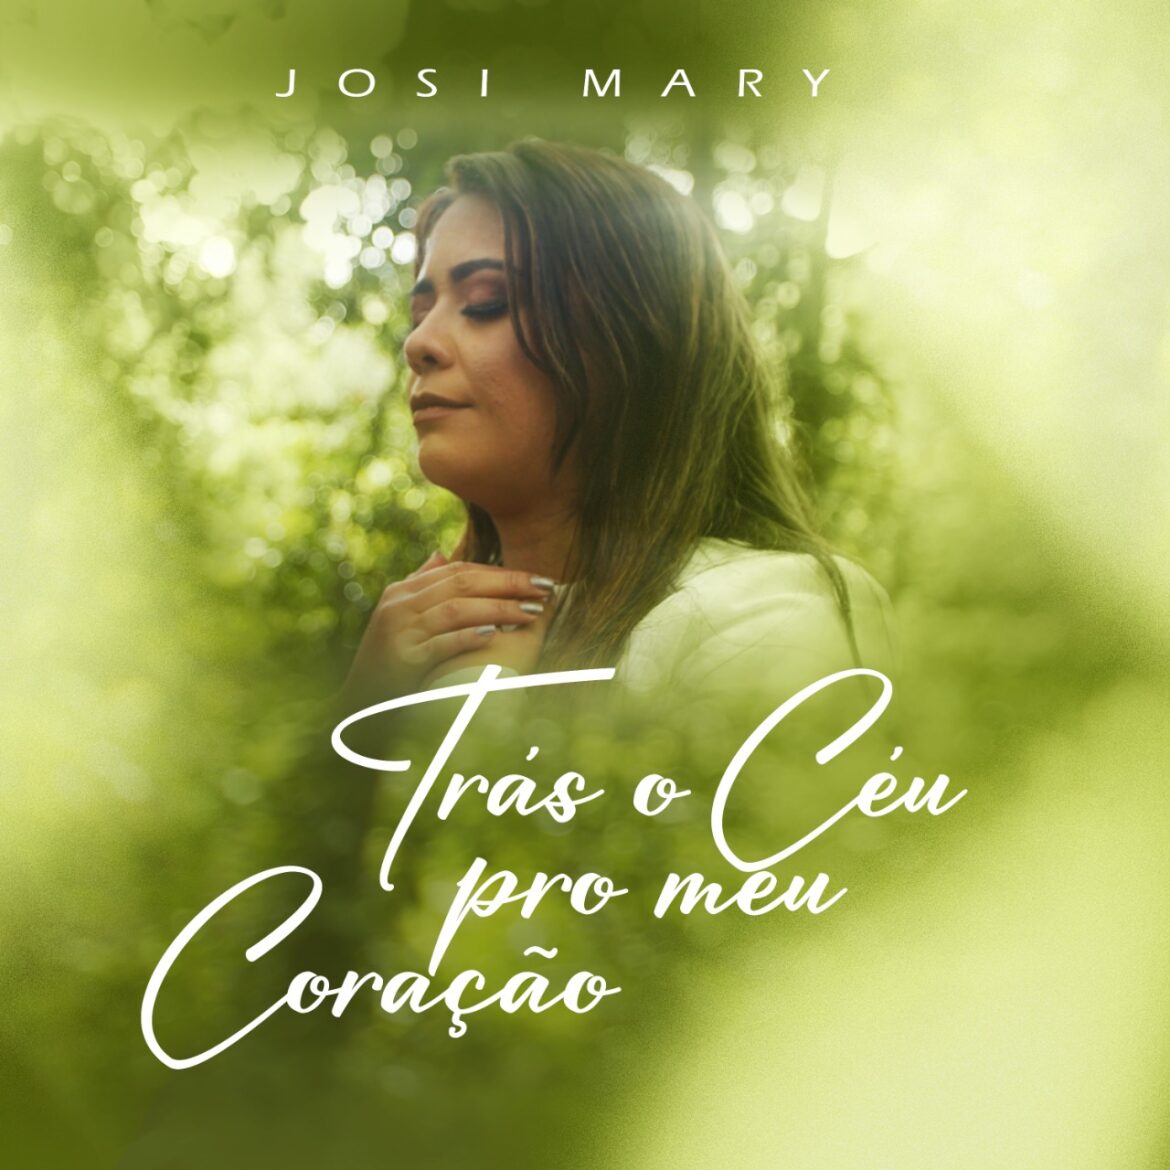 Josi Mary canta testemunho em single inédito e clama “Trás o Céu pro Meu Coração”